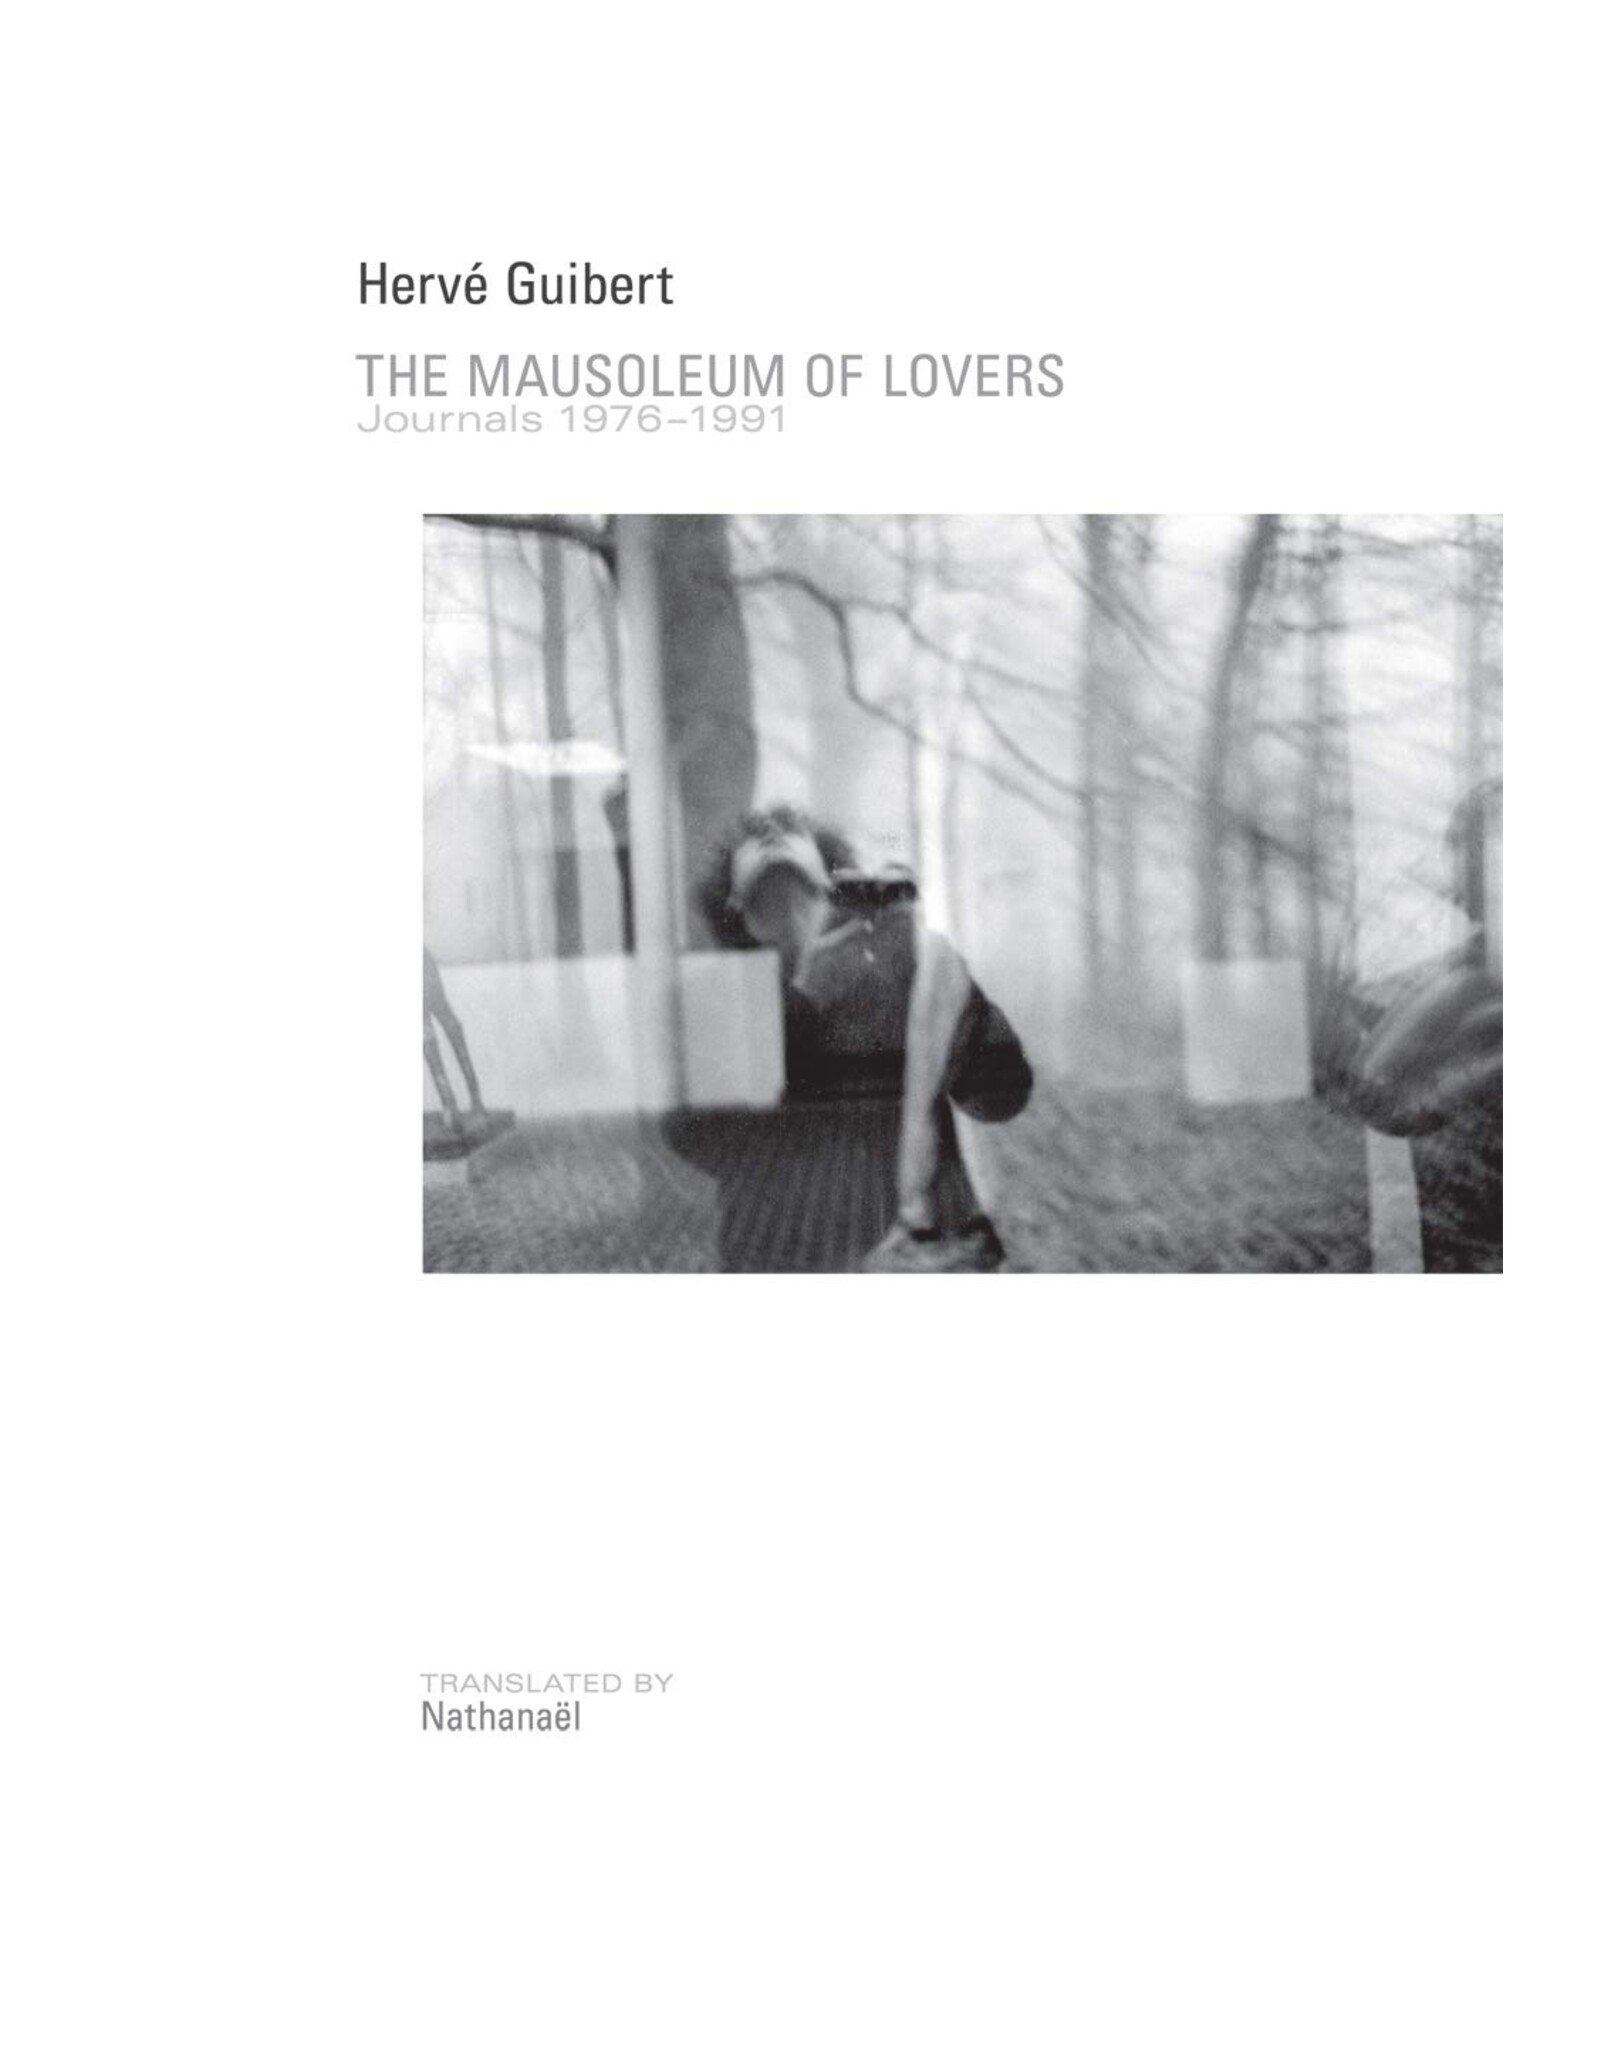 Herve Guibert: The Mausoleum of Lovers